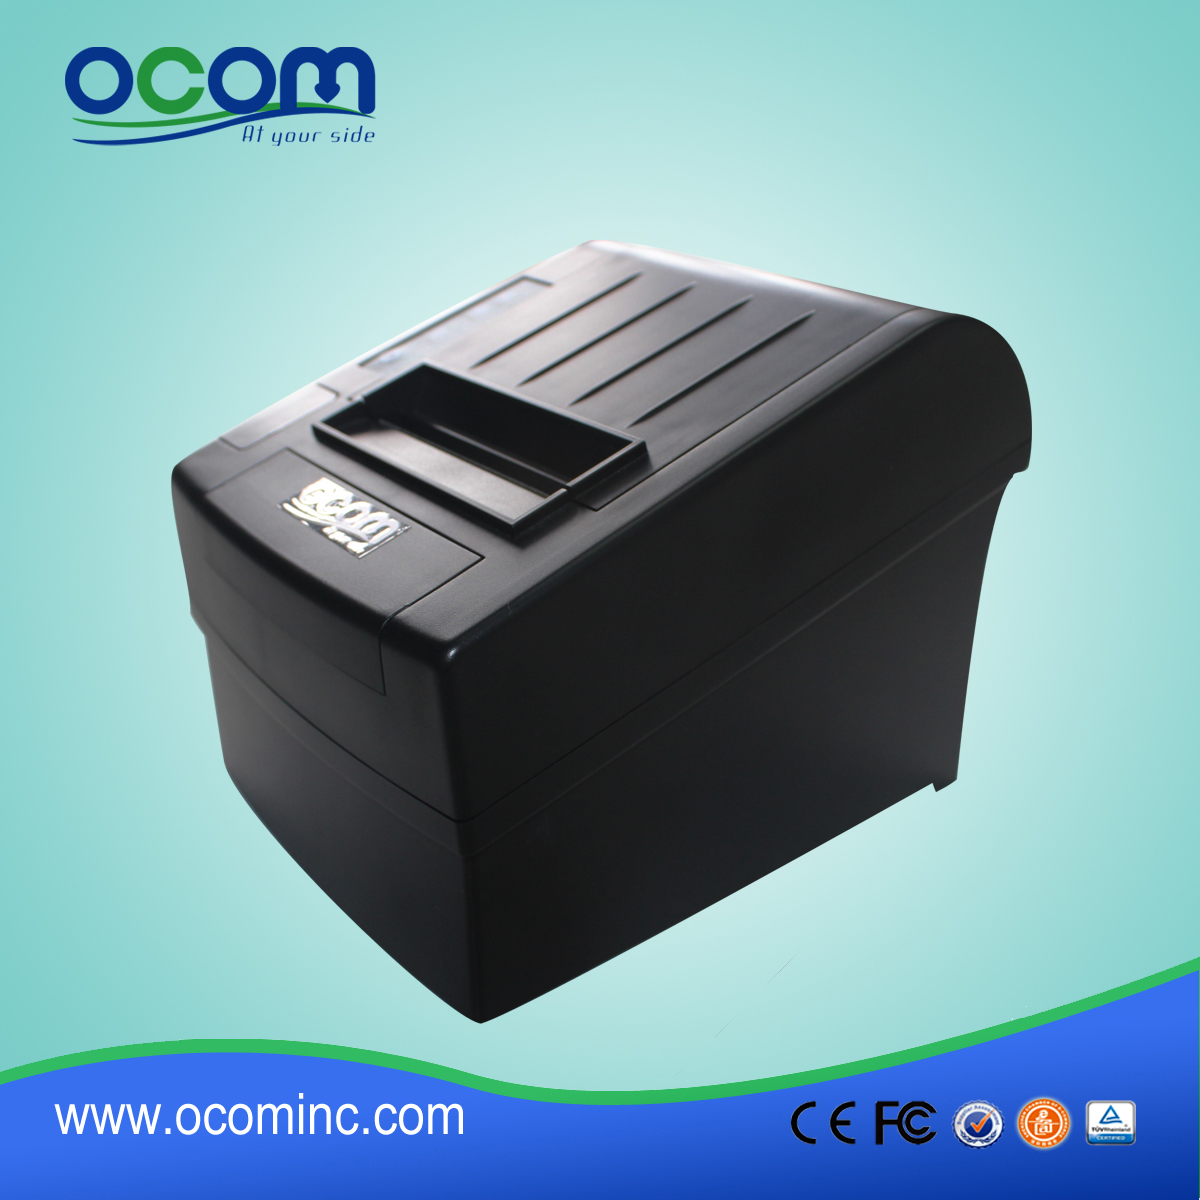 80毫米的安卓热敏收据打印机 -  OCPP-806